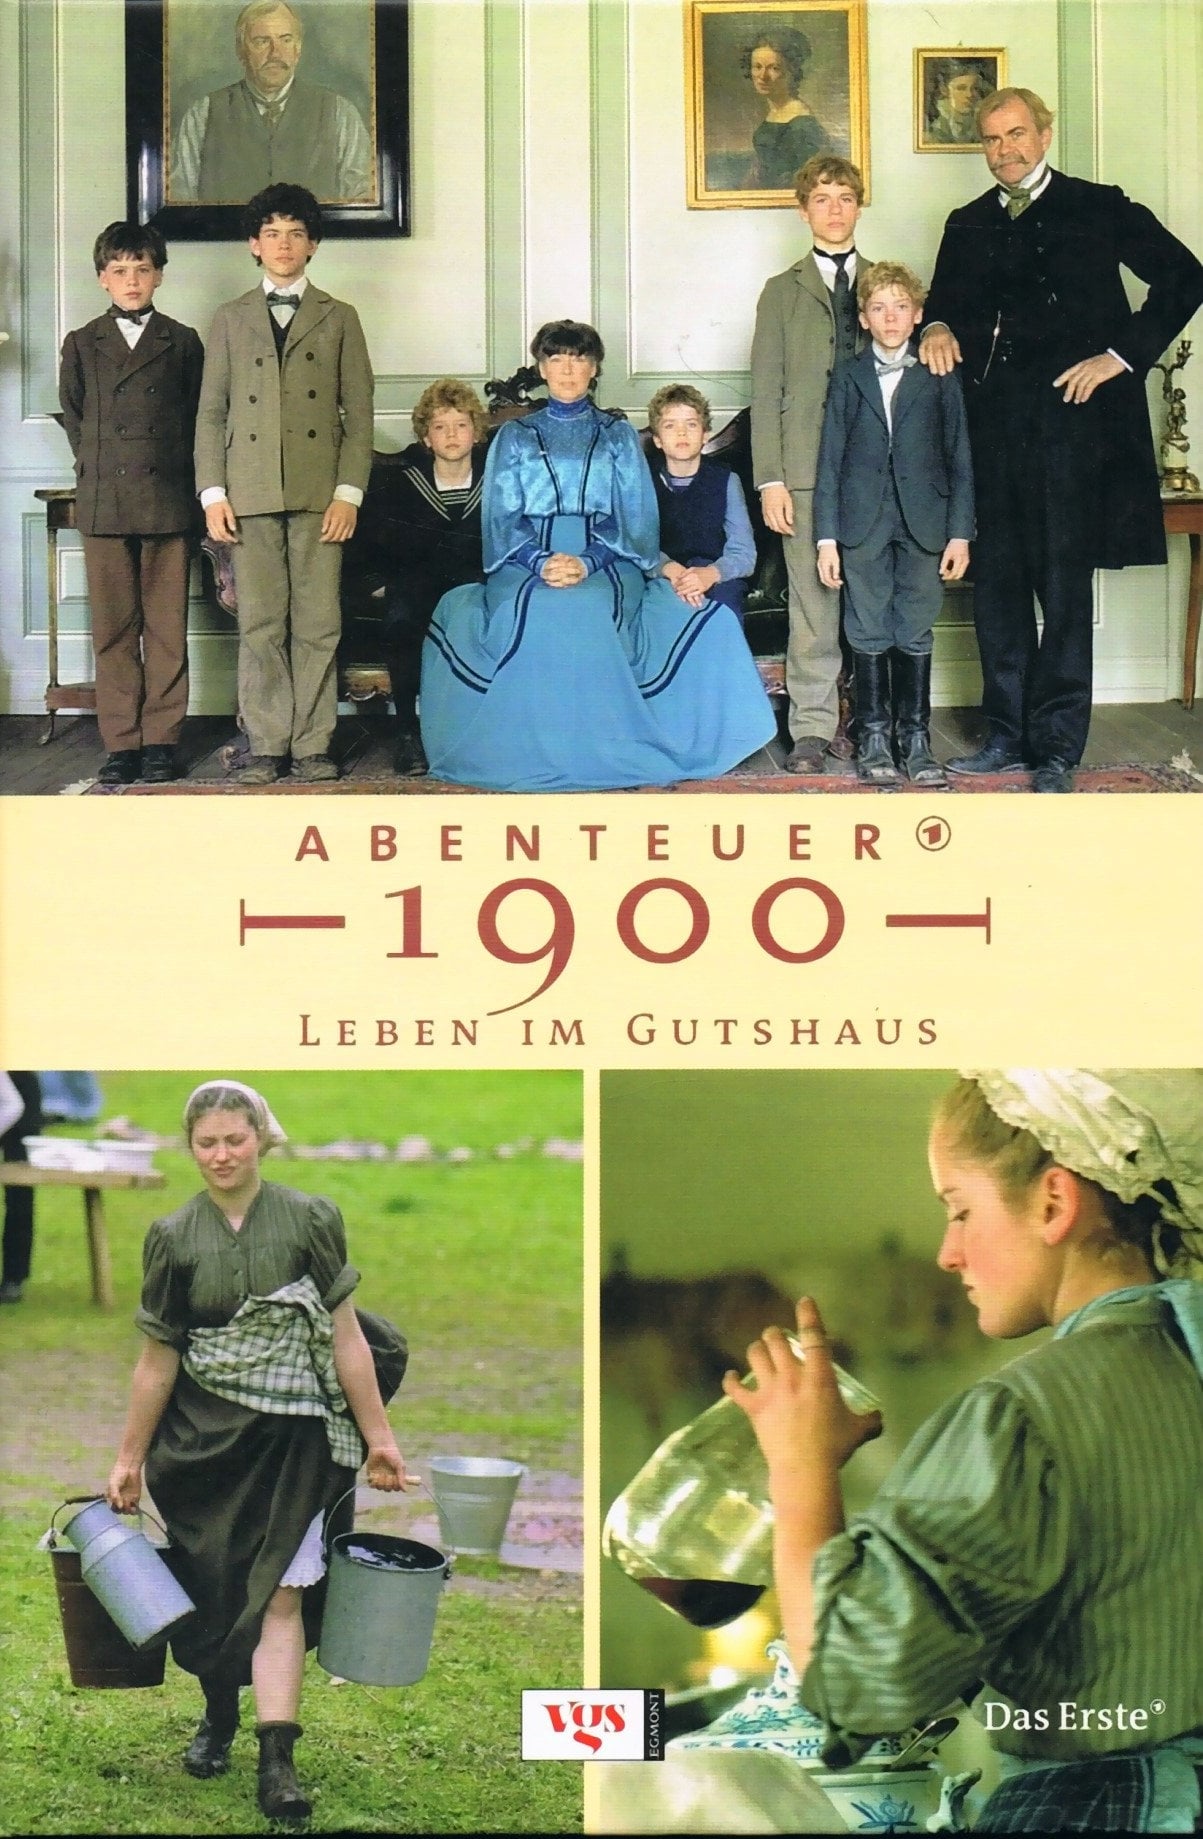 Abenteuer 1900 – Leben im Gutshaus